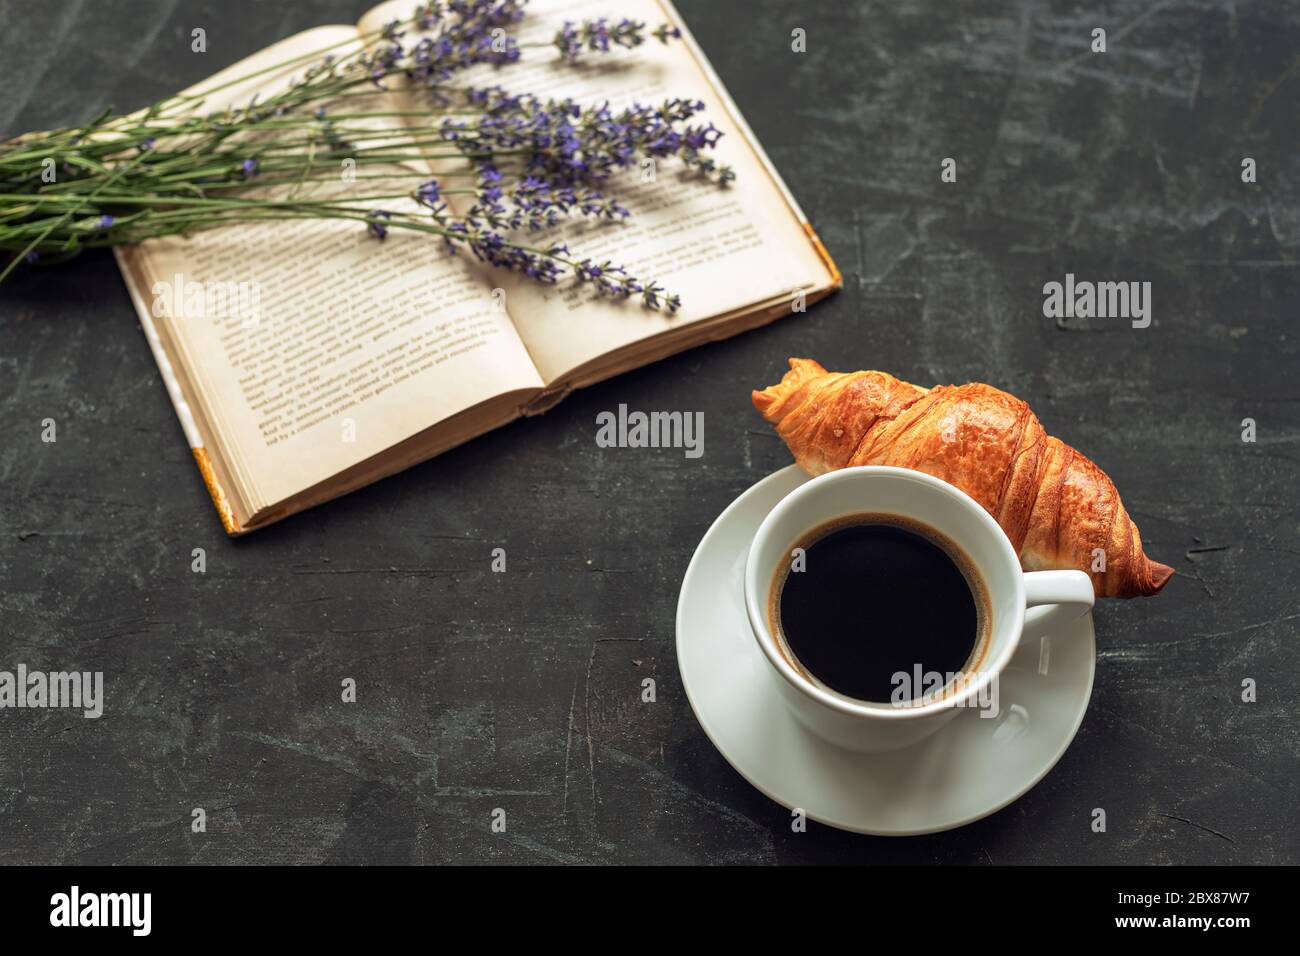 Tazza di caffè con croissant, libro e bouquet di lavanda su tavola nera. Foto Stock